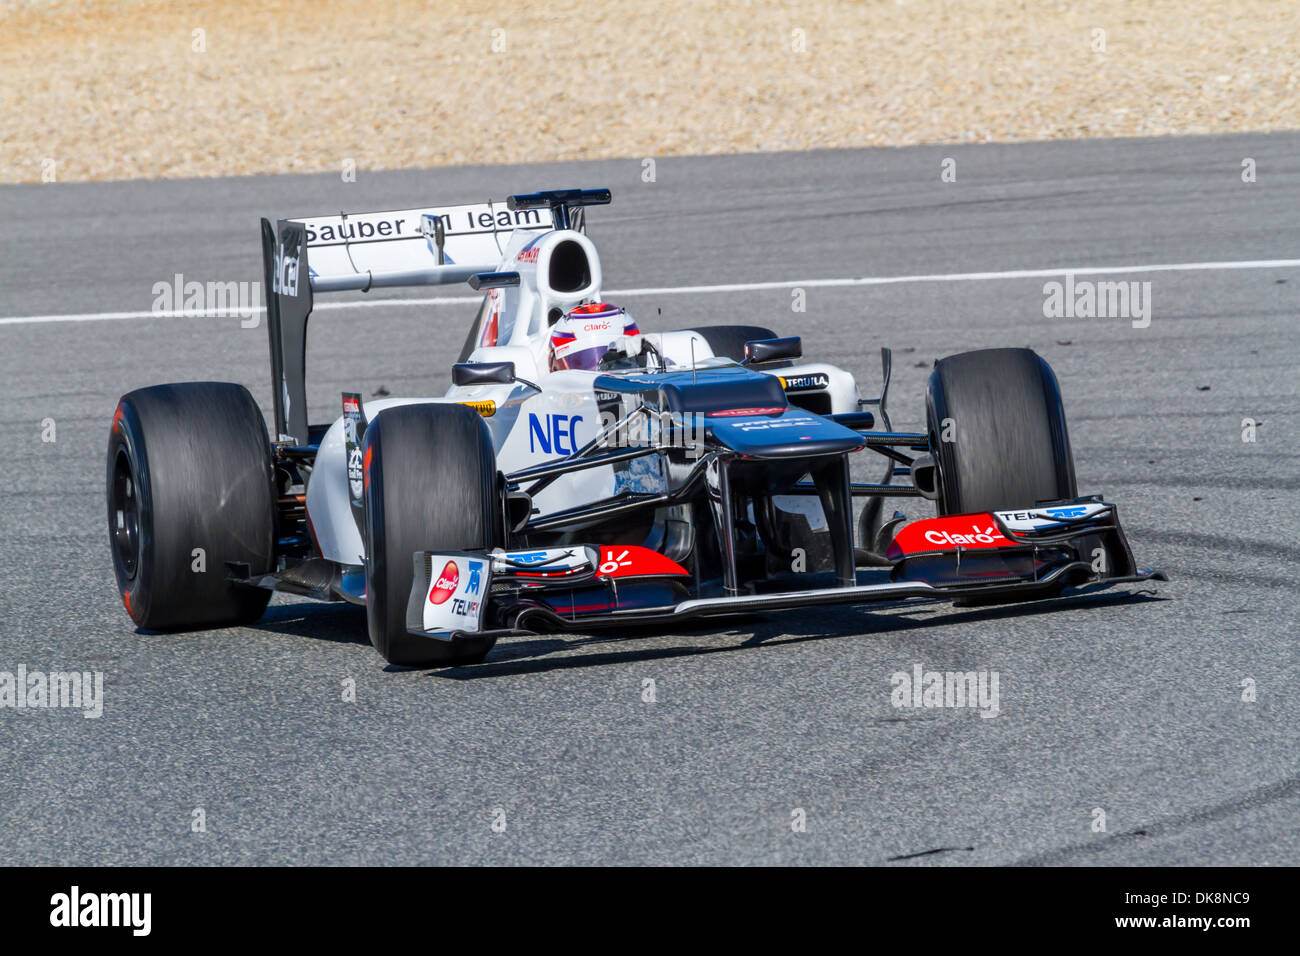 Kamui Kobayashi of Sauber F1 races on training session Stock Photo